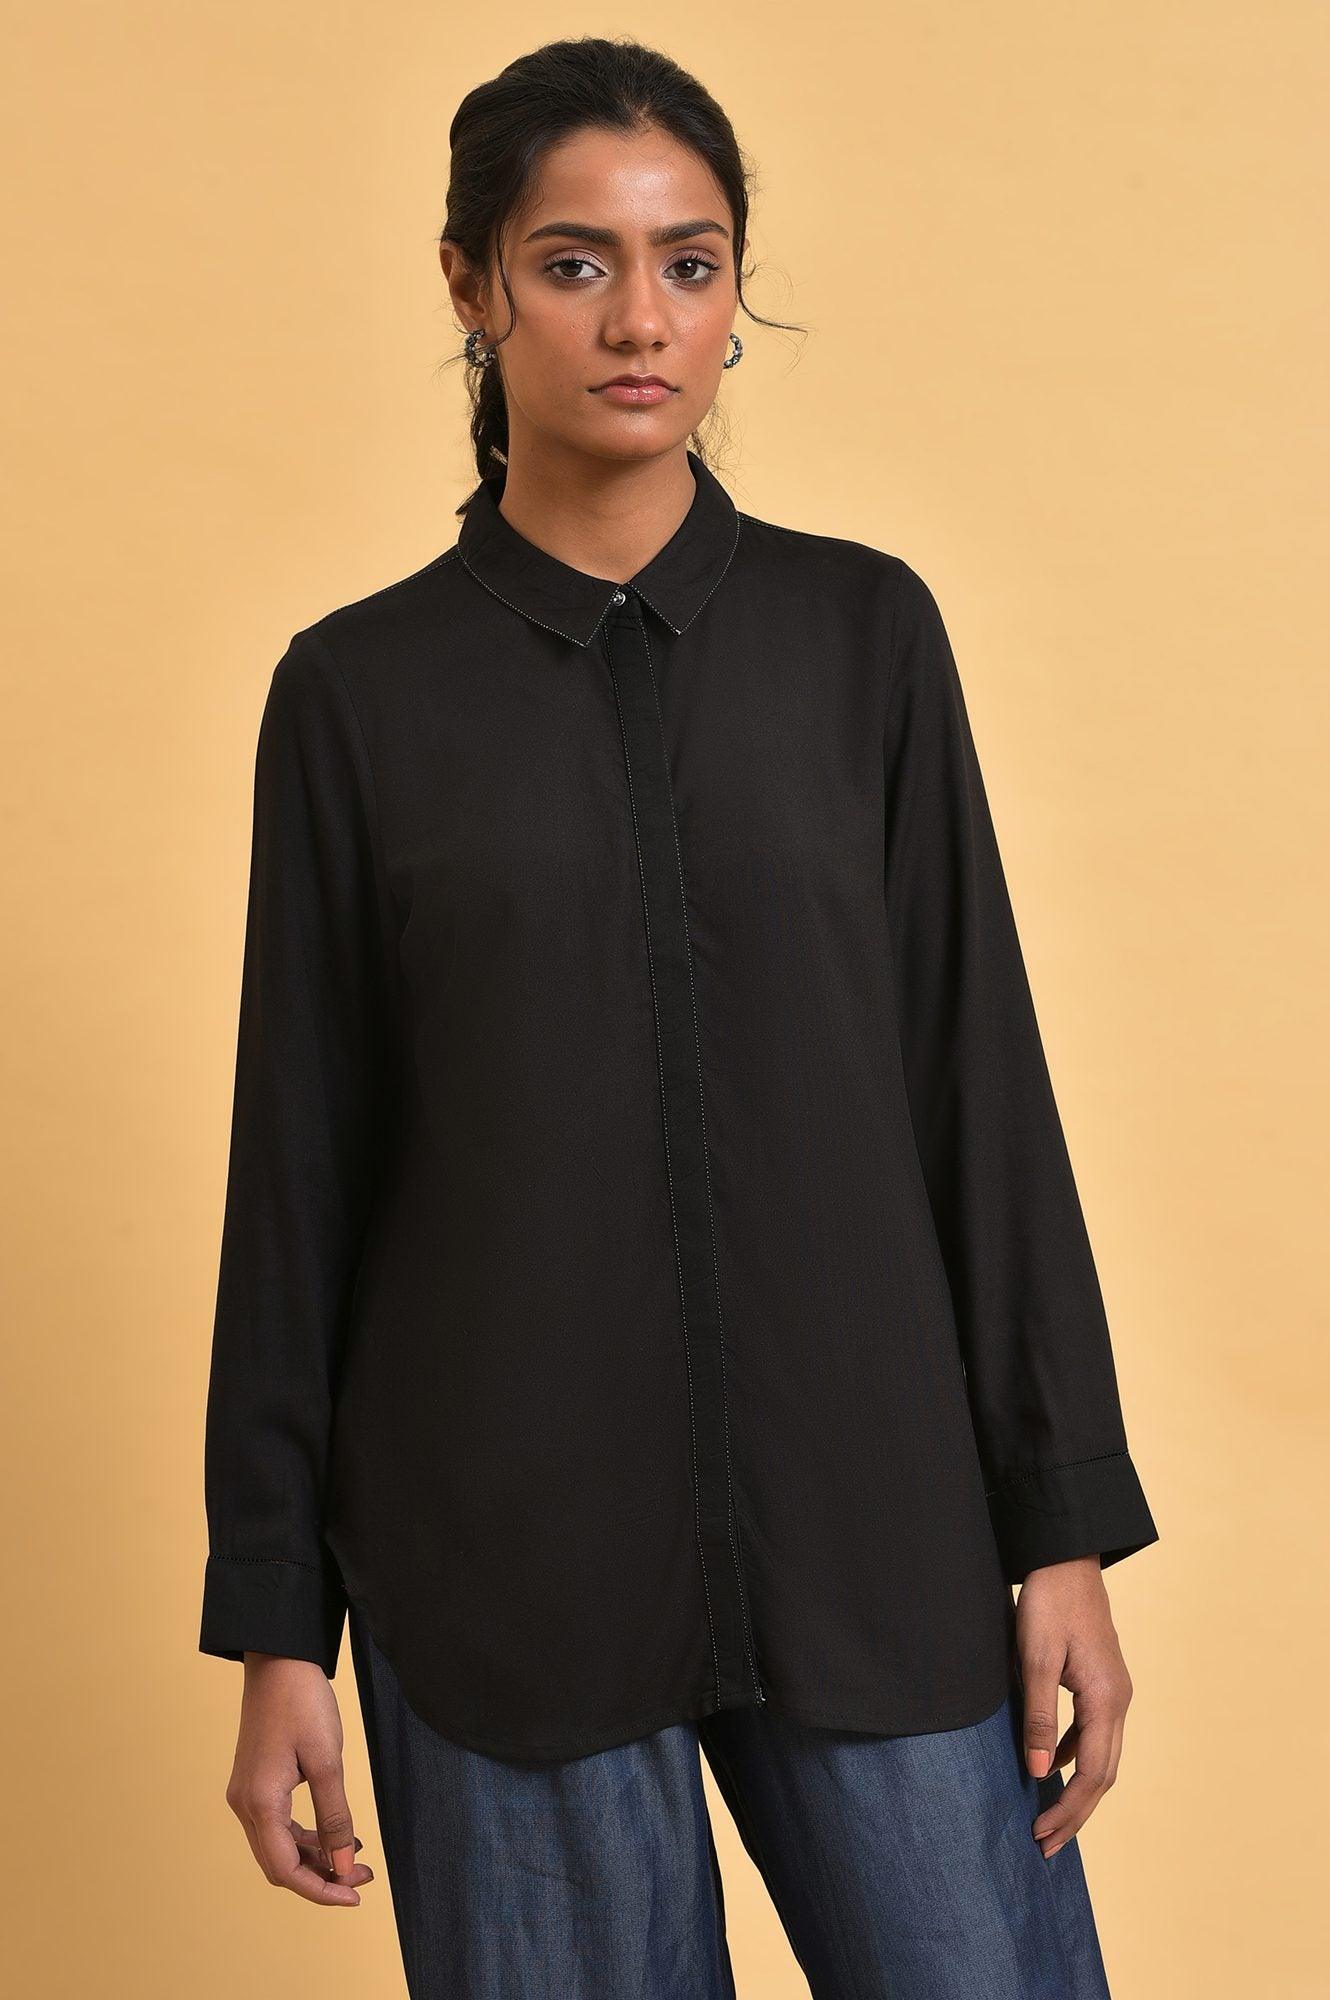 Black Rayon Women Western Shirt - wforwoman